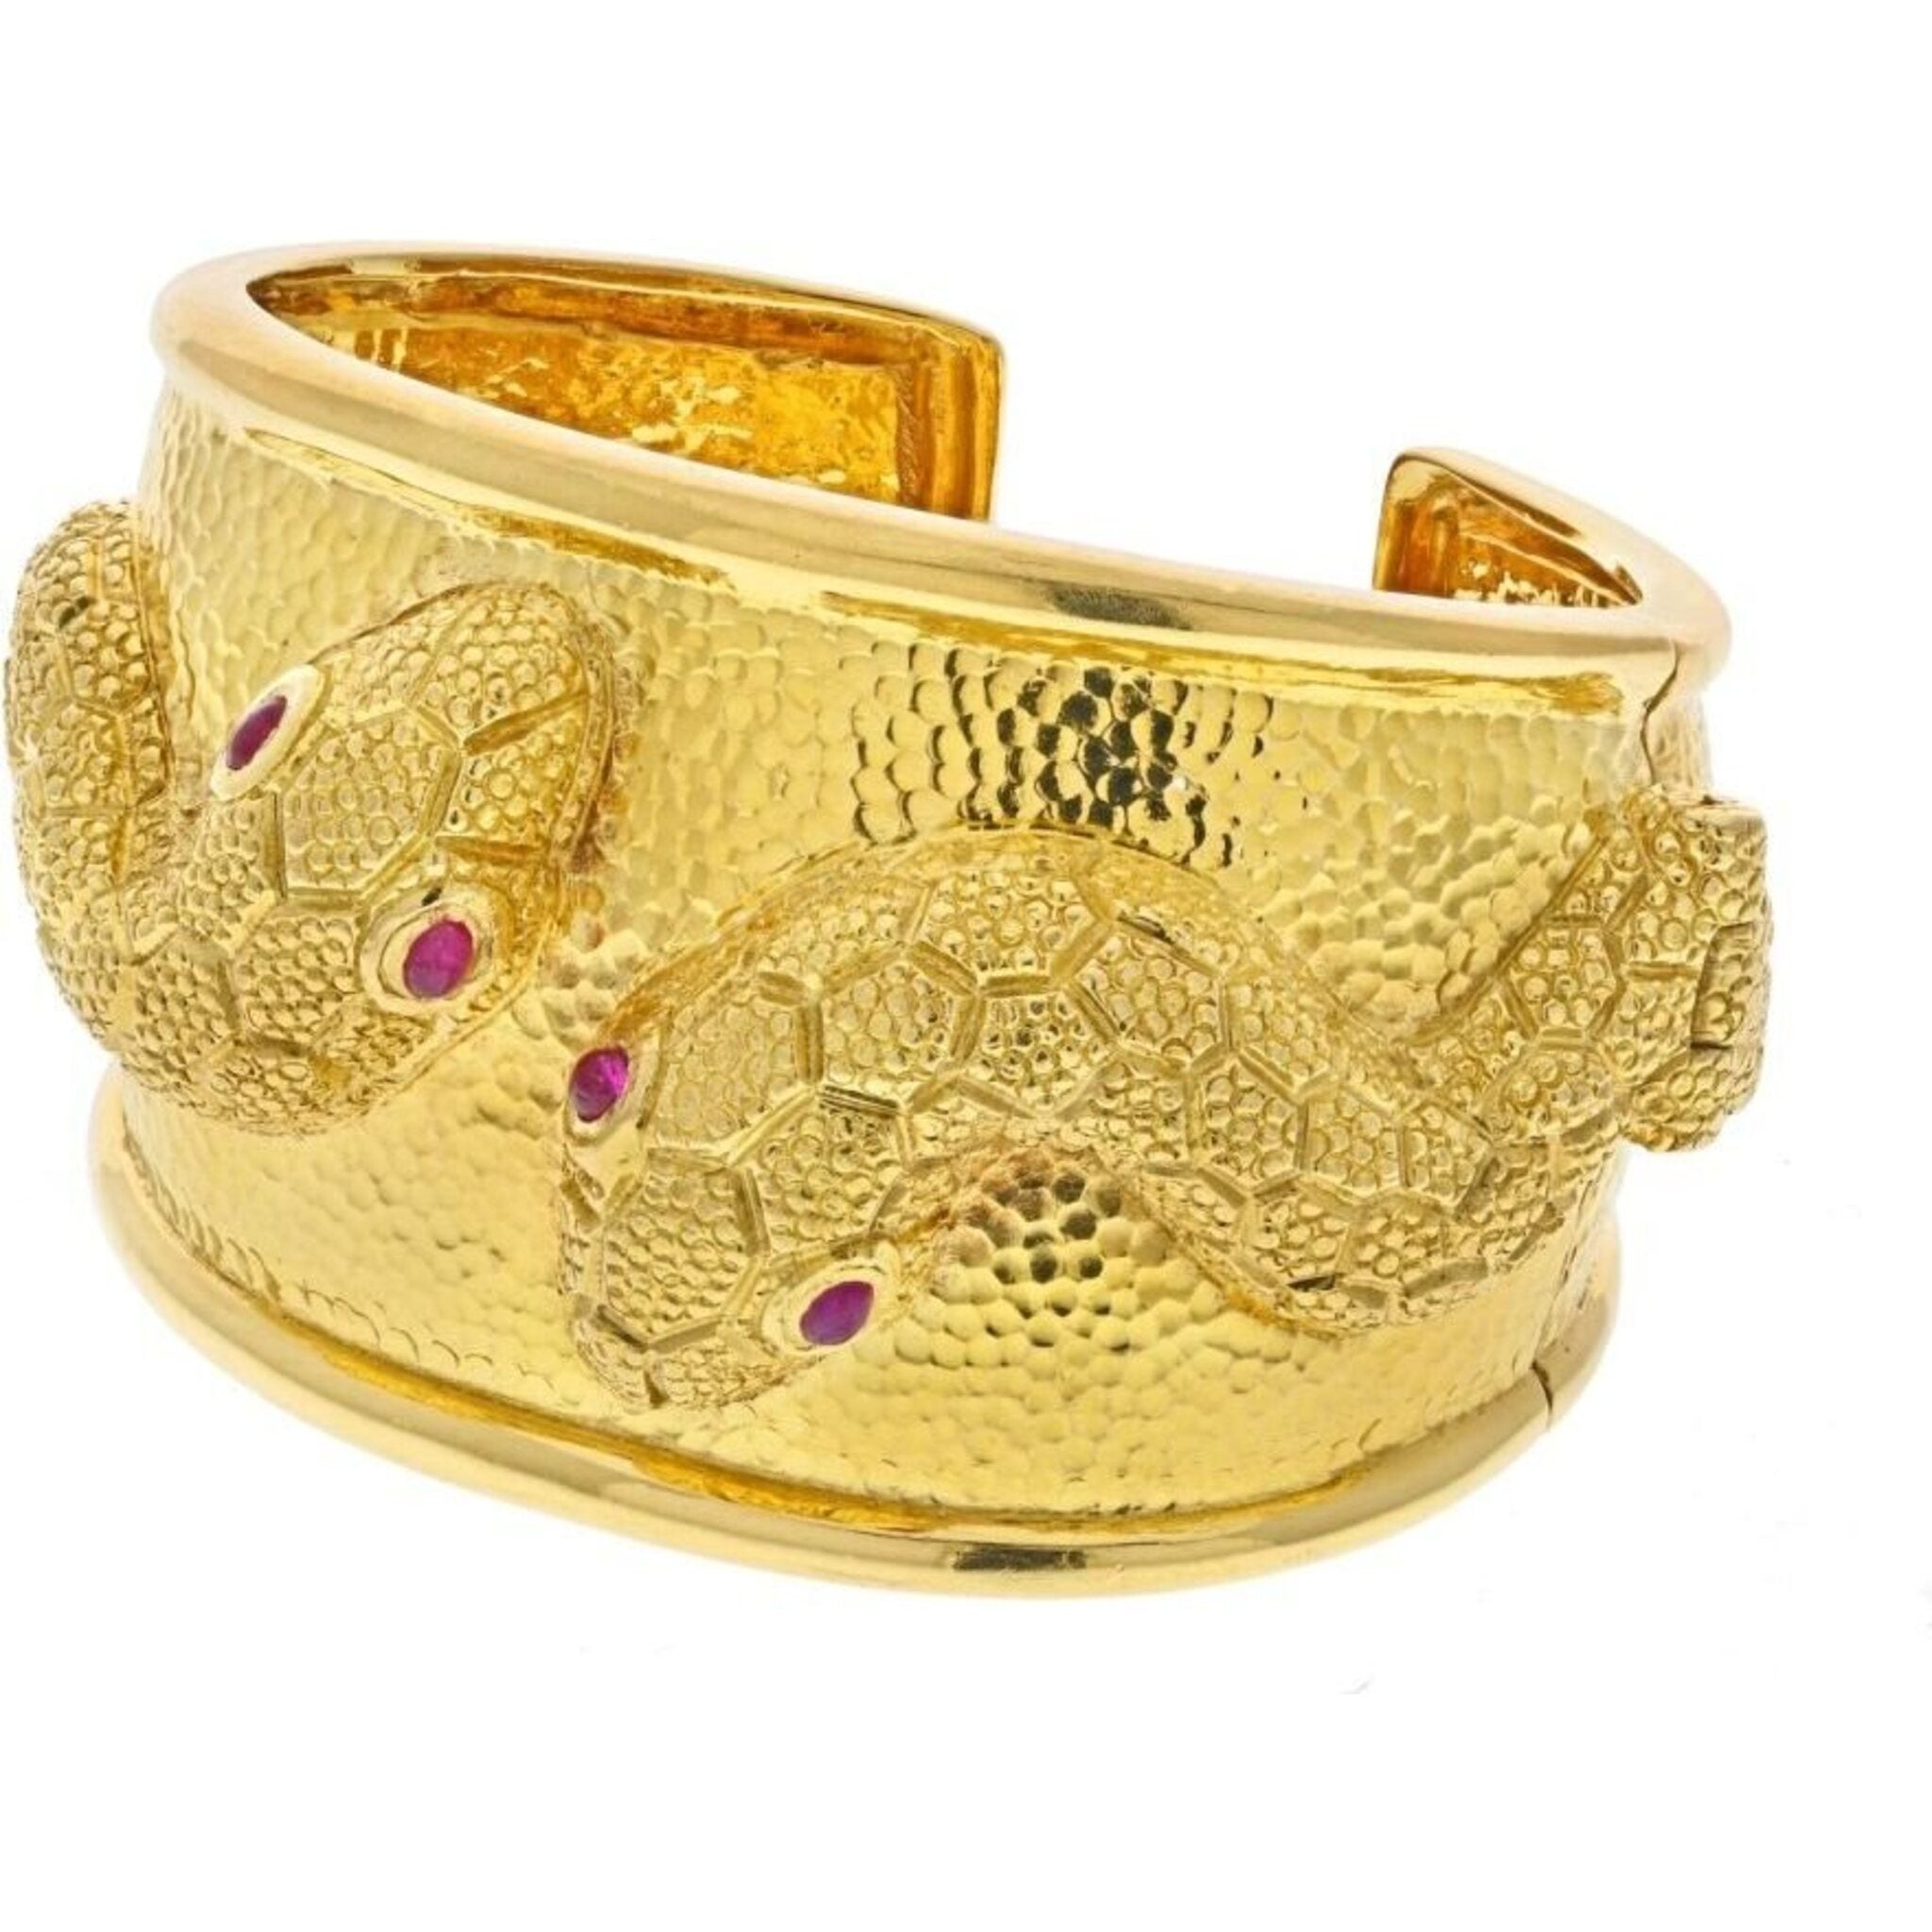 Brass Double Snake Men Bracelet Jewelry Gift